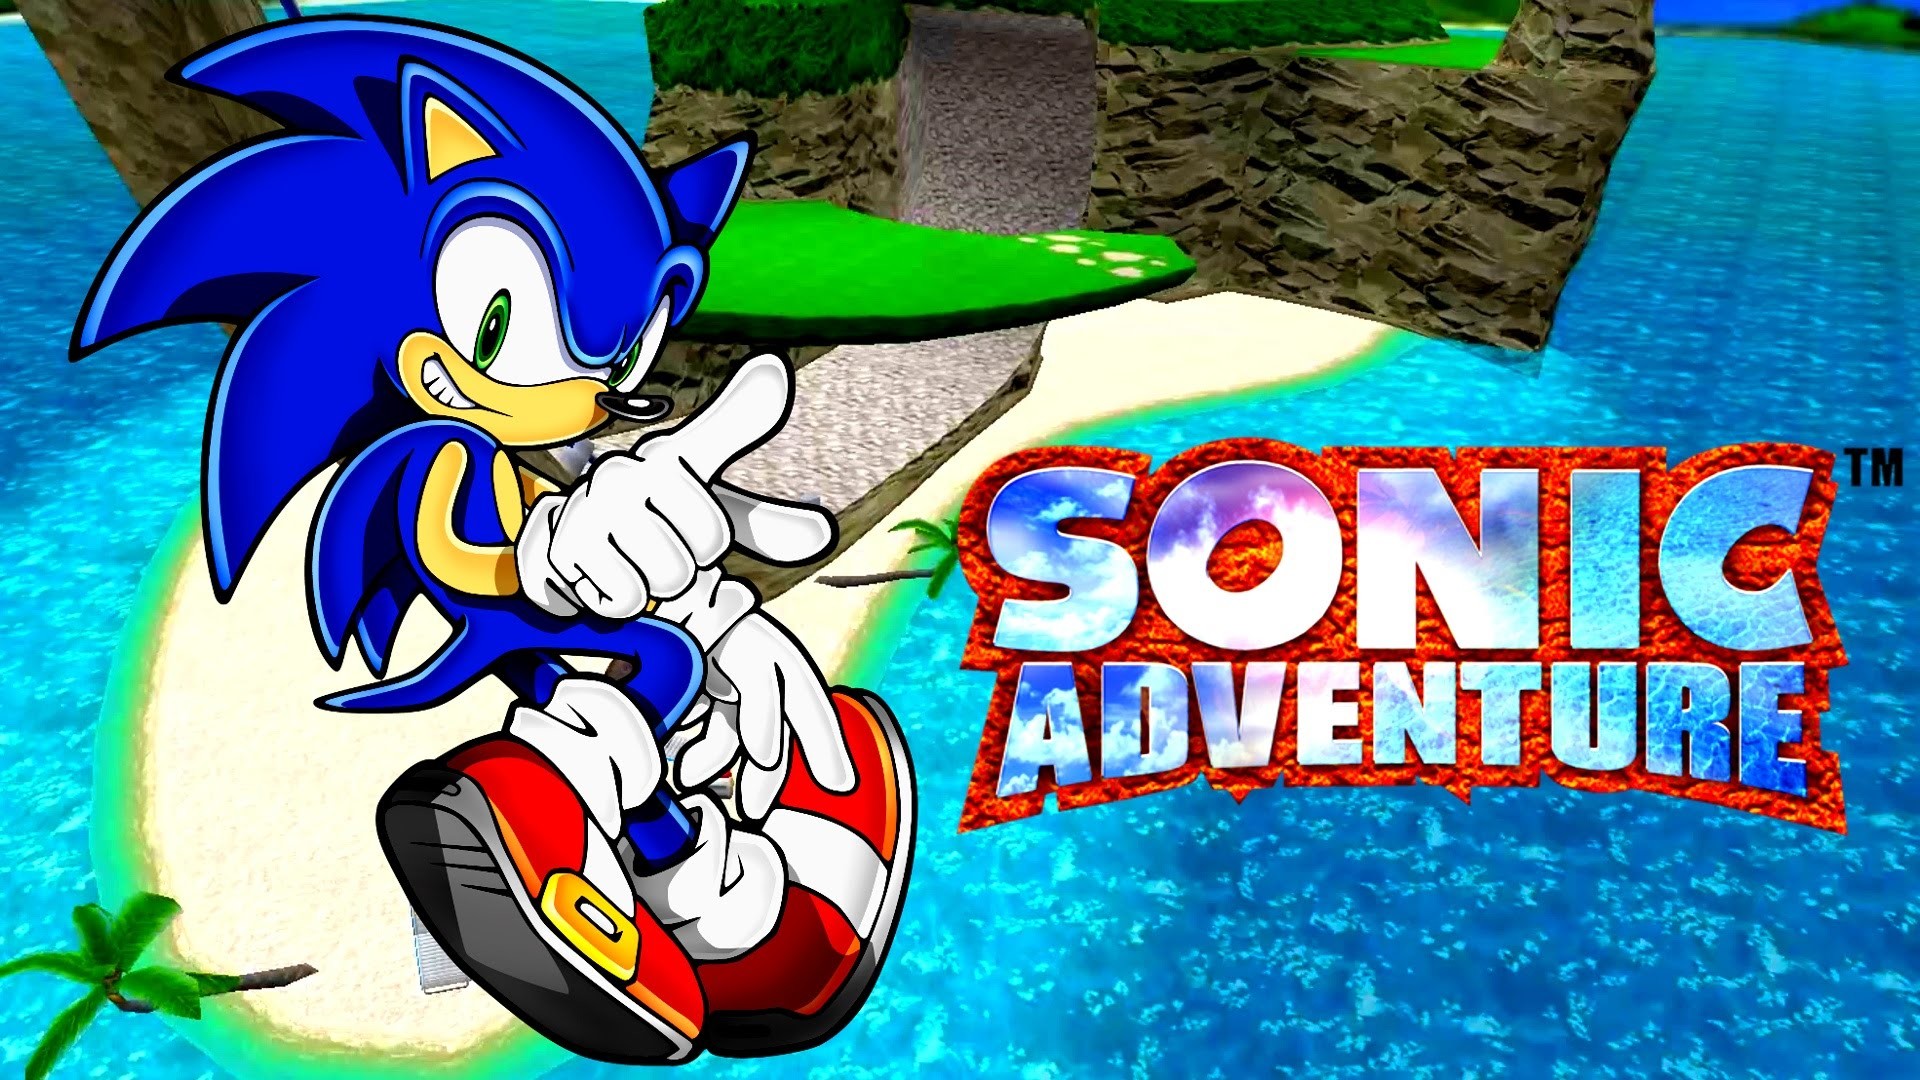 Sonic adventure iso